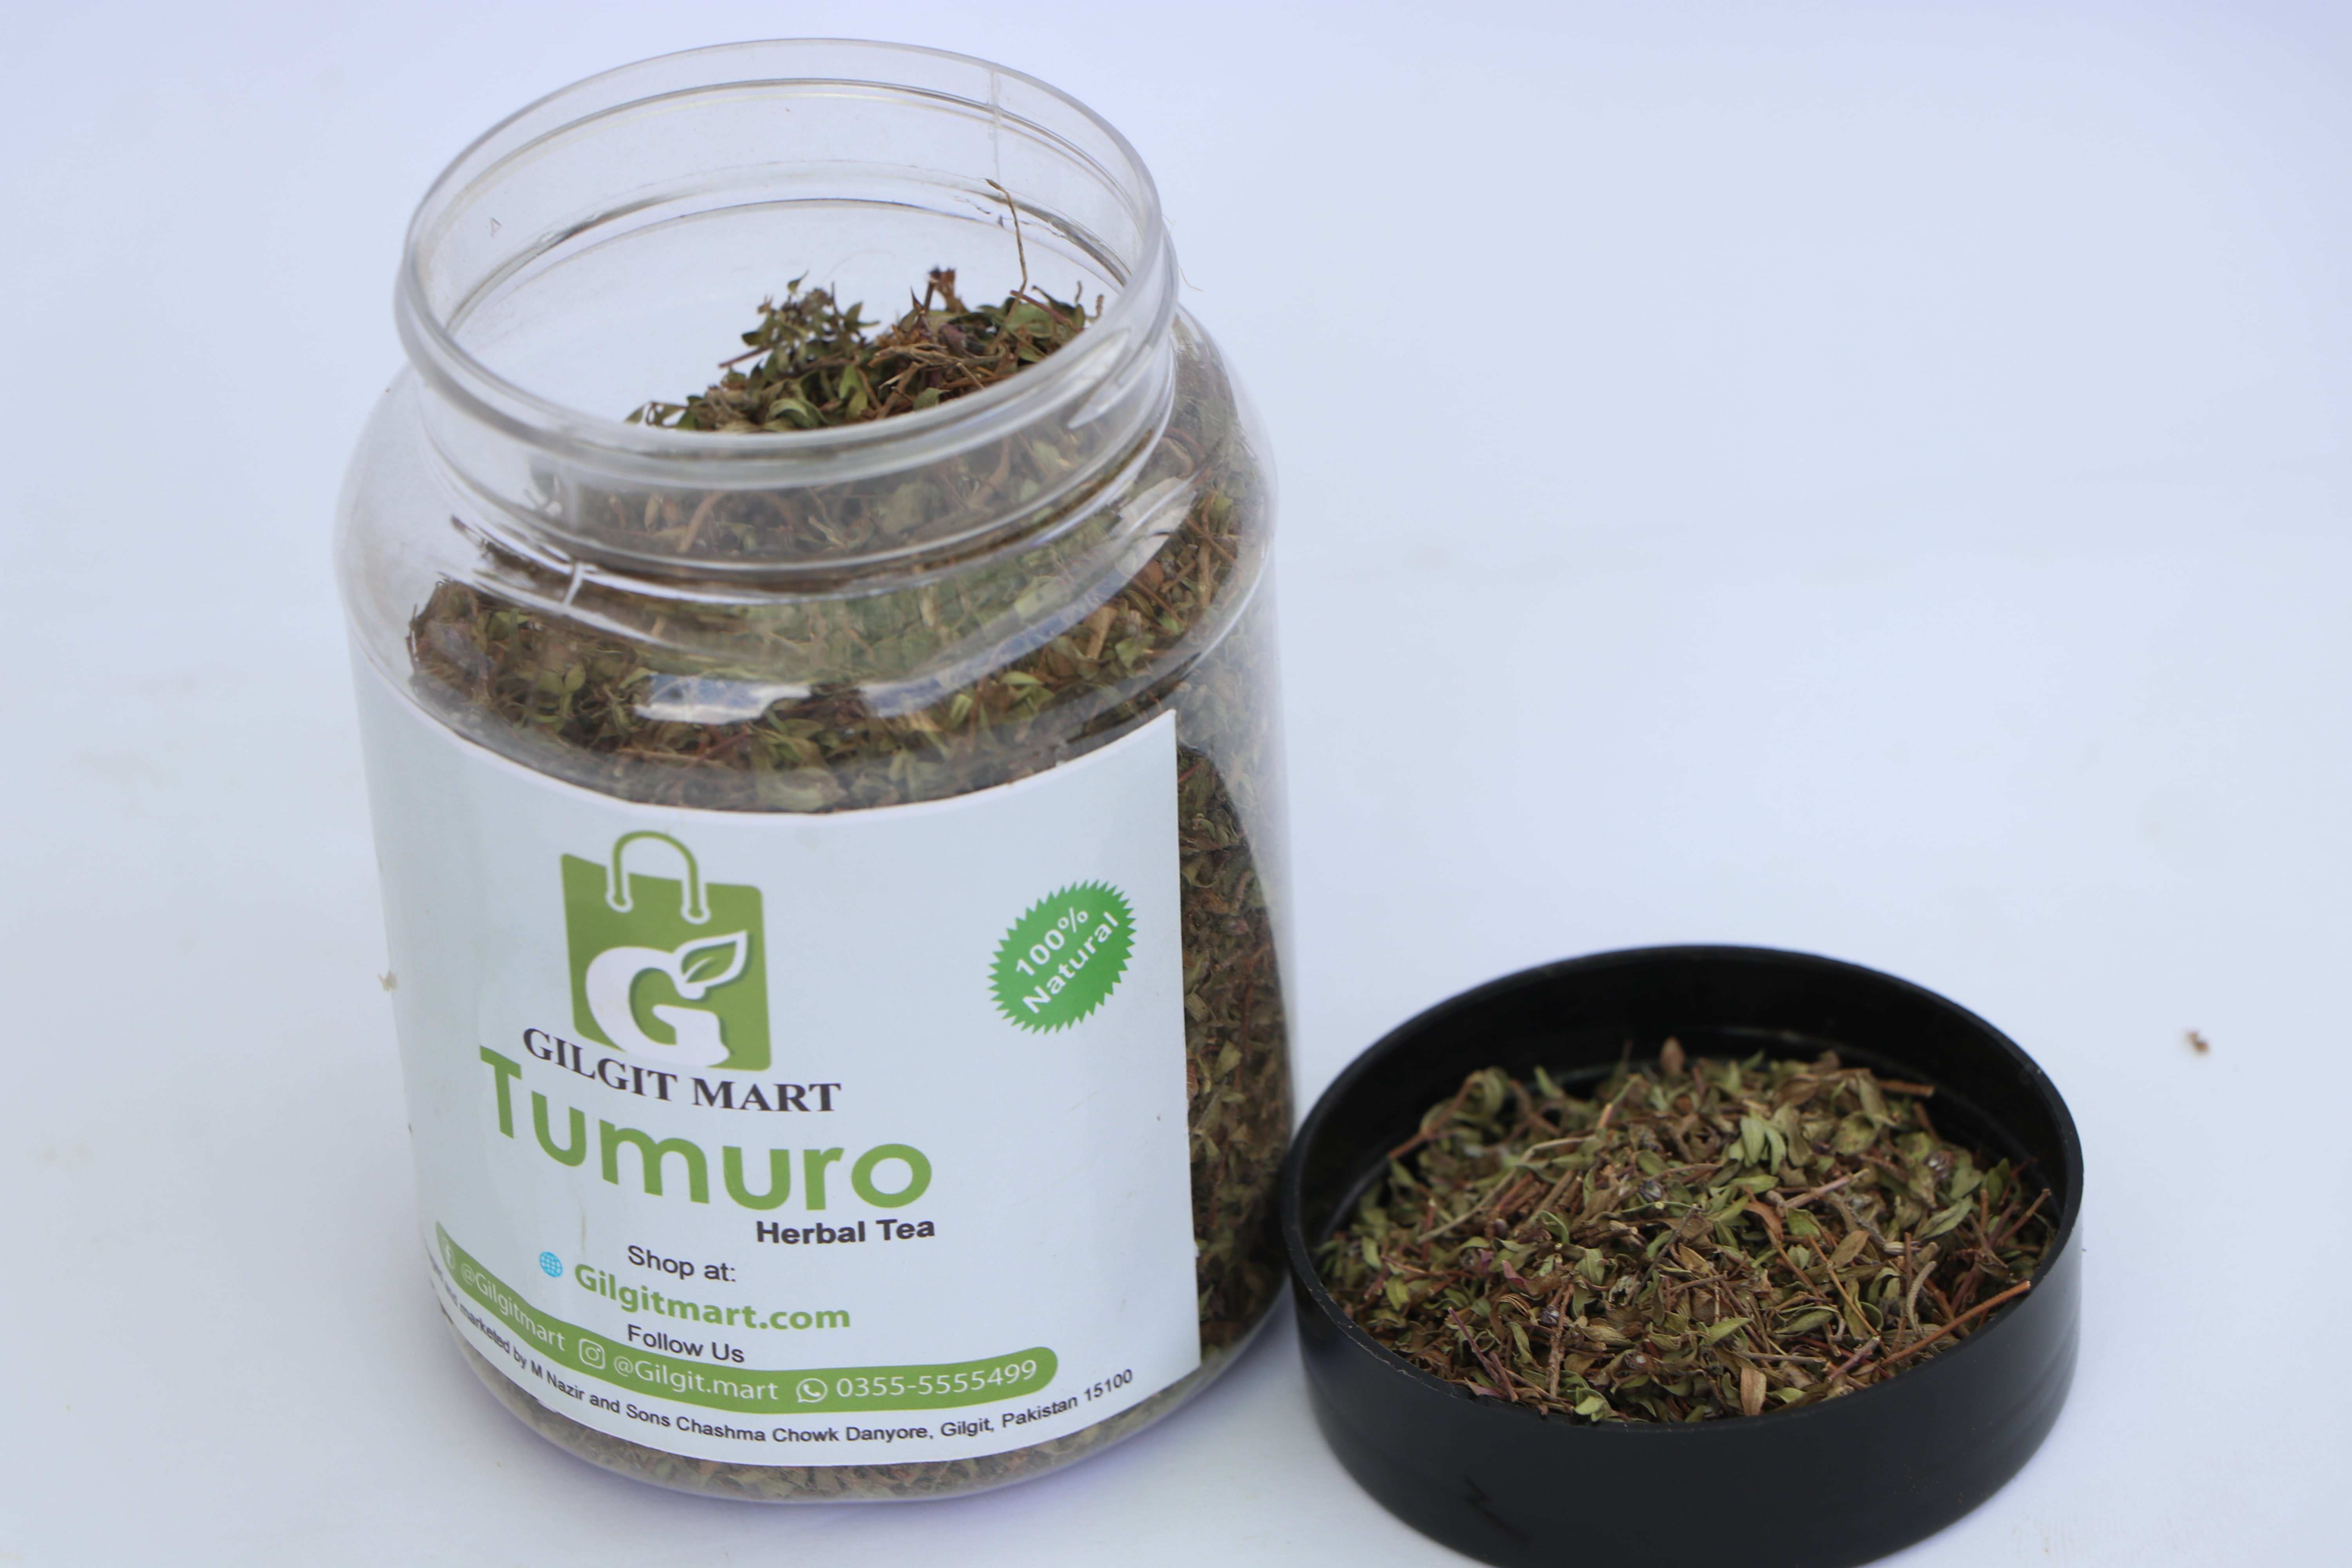 Tumuro  Herbal Tea ( Wild Thyme)